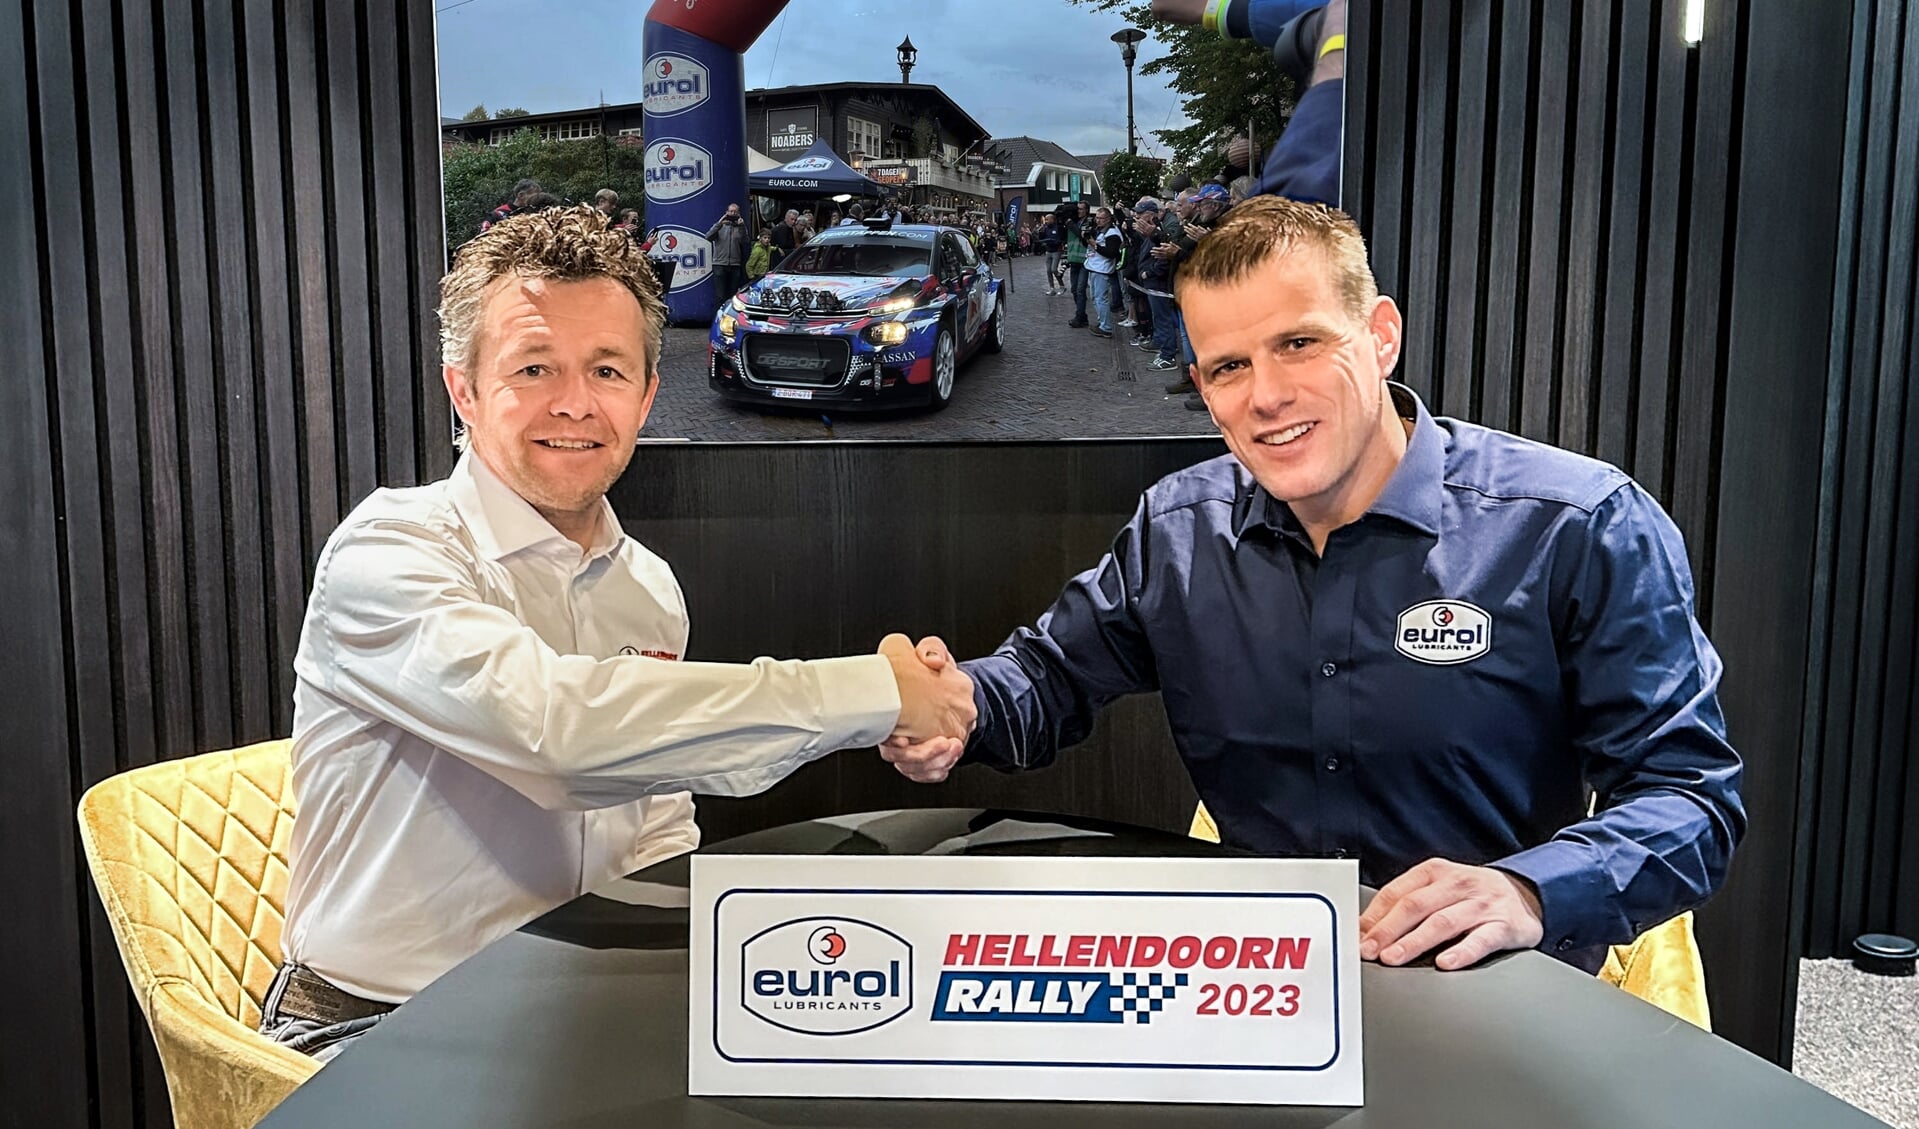 Erik Wevers, de nieuwe voorzitter van de Stichting Hellendoorn Rally en Dennis Marsman, Marketing Manager van Eurol, ondertekenden onlangs de samenwerkingsovereenkomst.